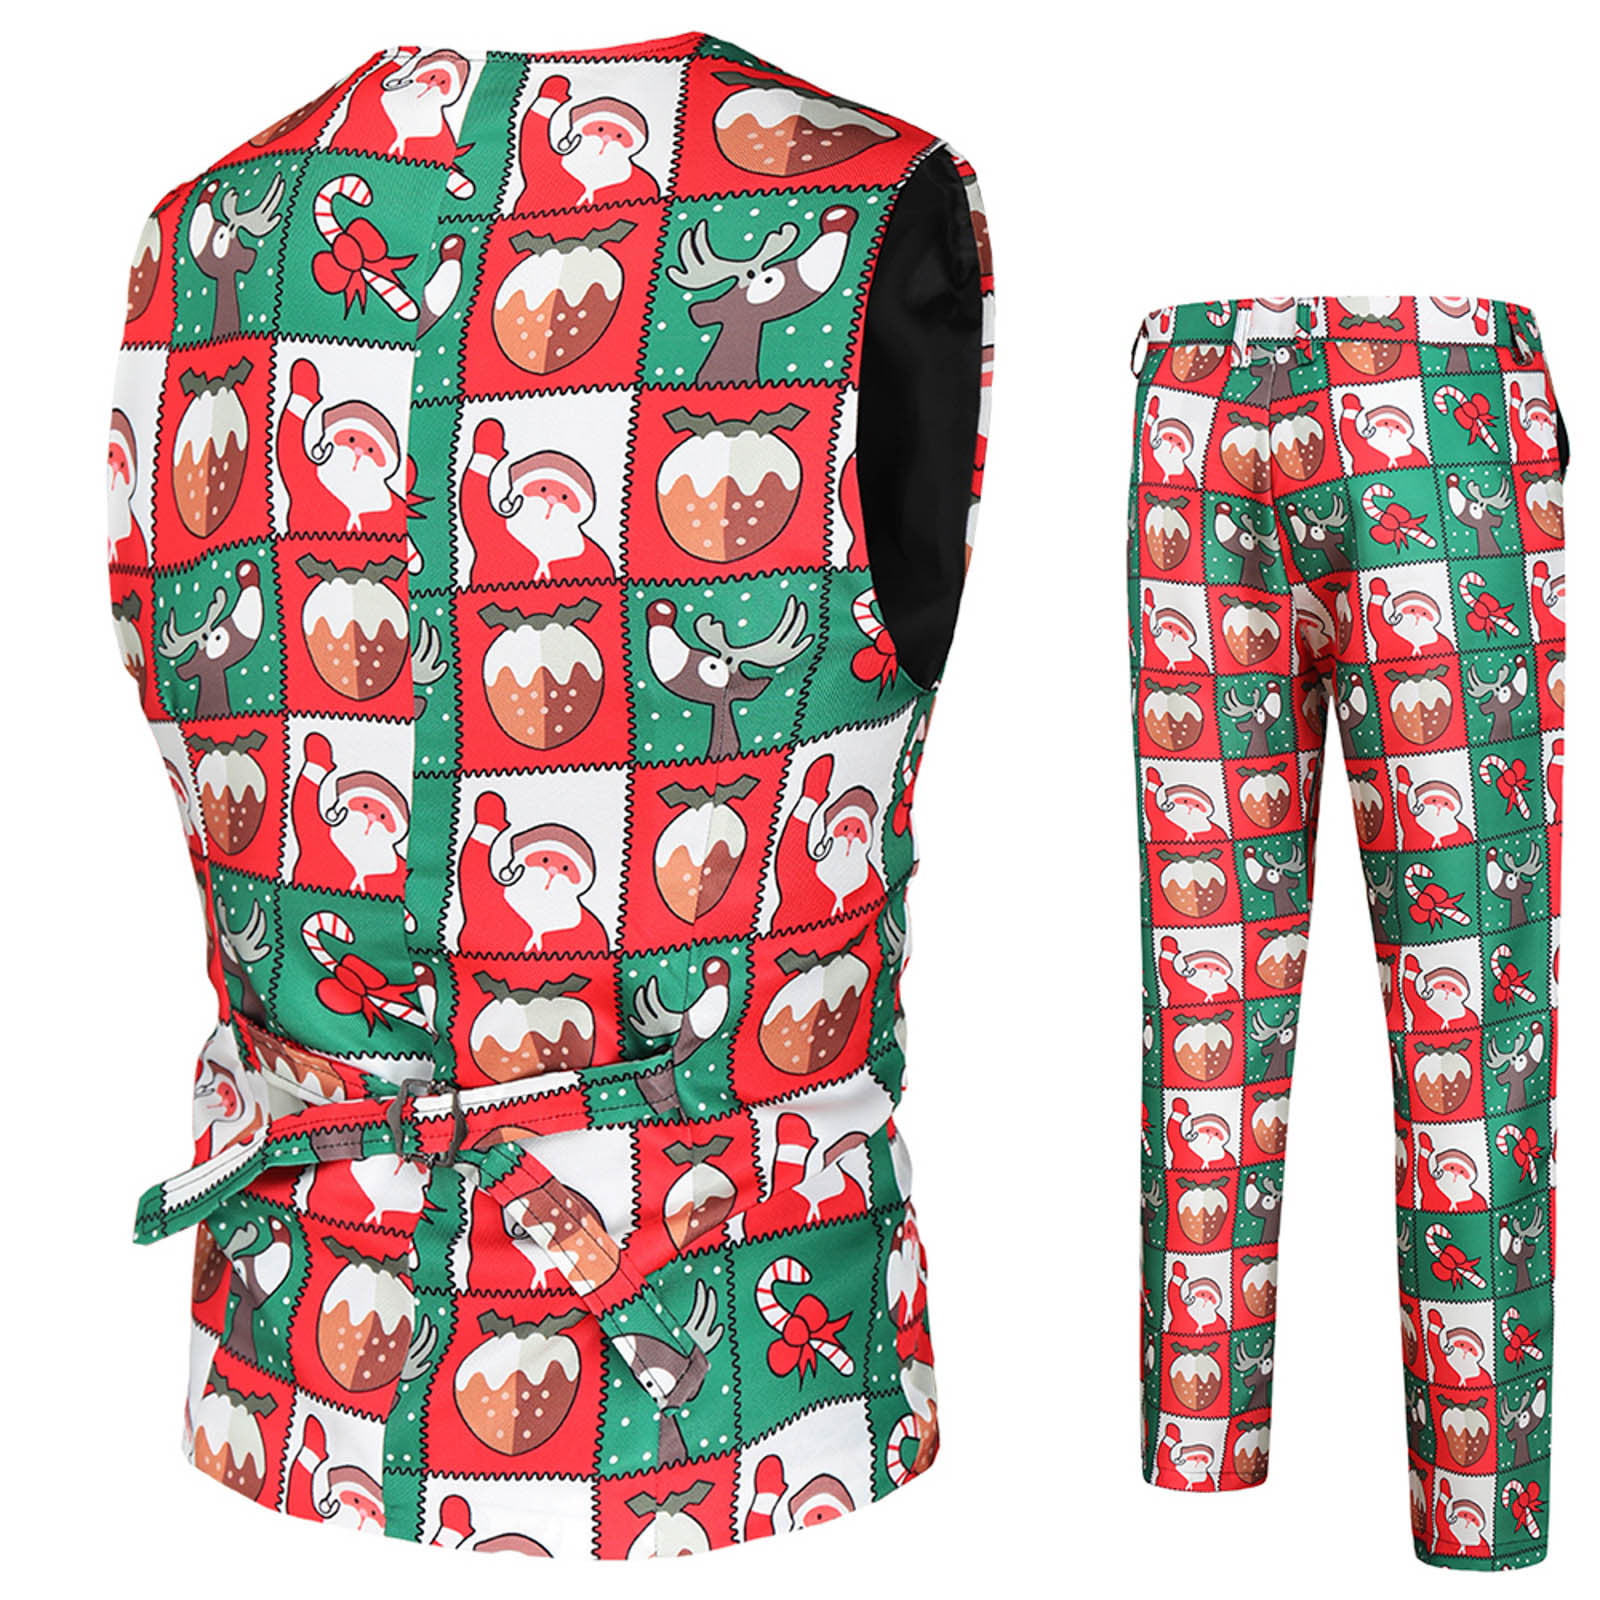 8QIDA Men's Fashion Casual Christmas Printed Suit Vest Pants Suit Set ...